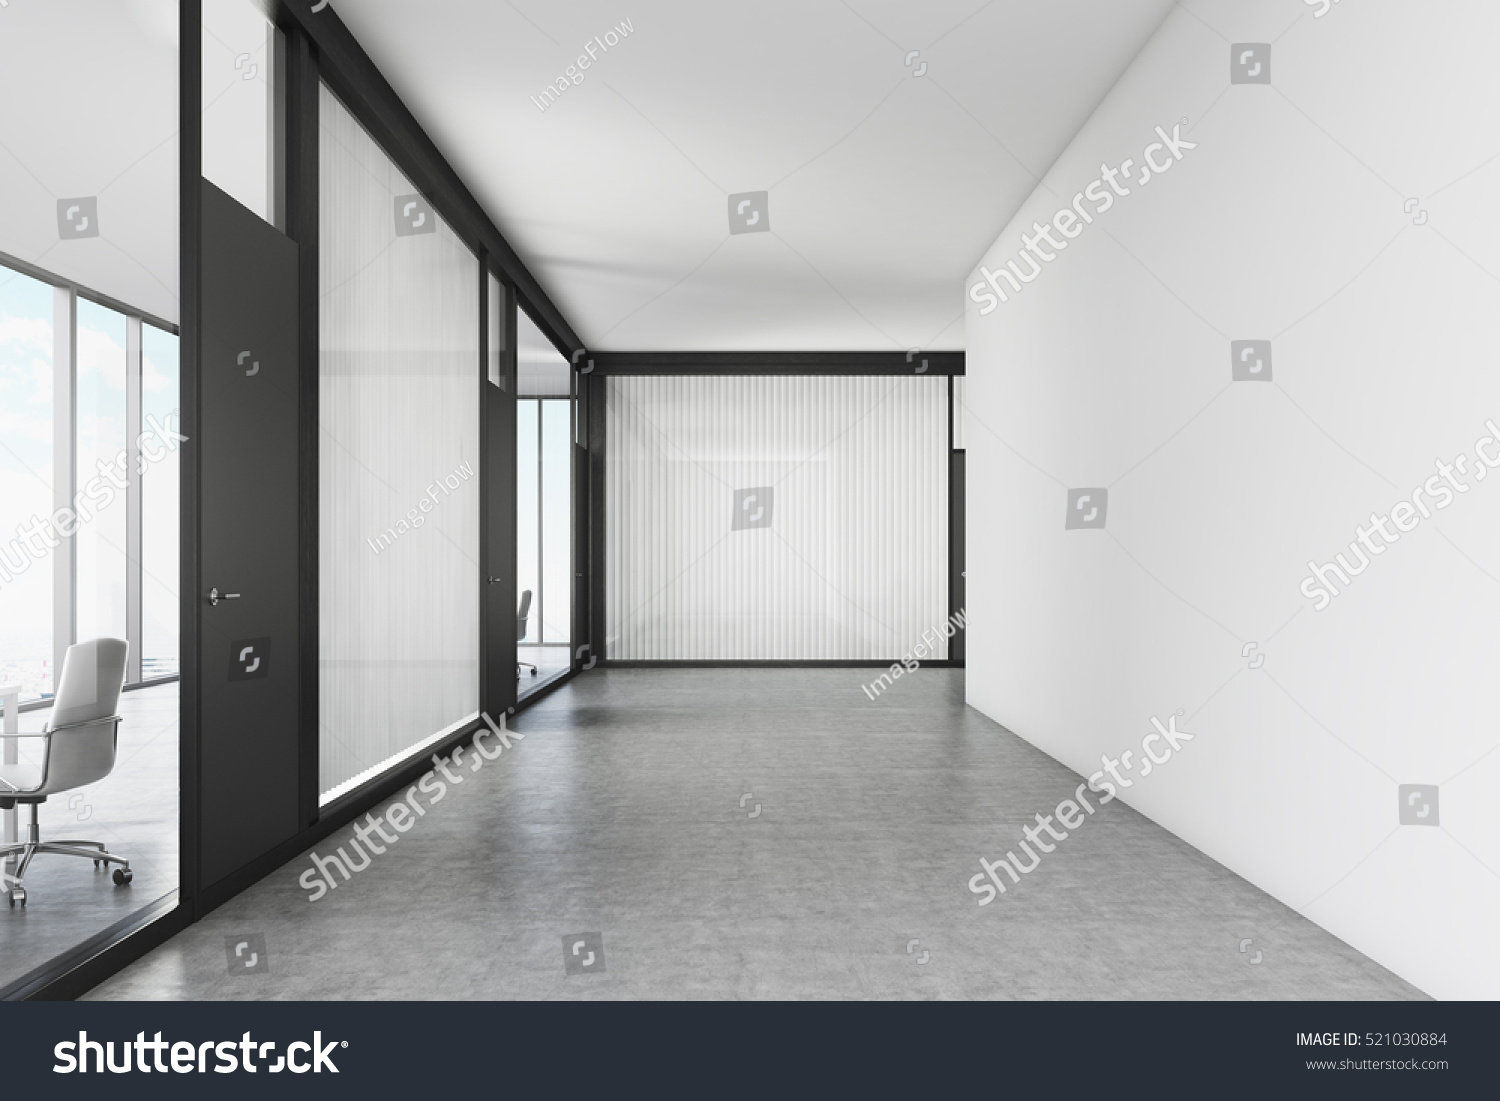 白とガラスの壁を持つ空の空のオフィス廊下 黒いドアが会議室に通じている 3dレンダリング モックアップ のイラスト素材